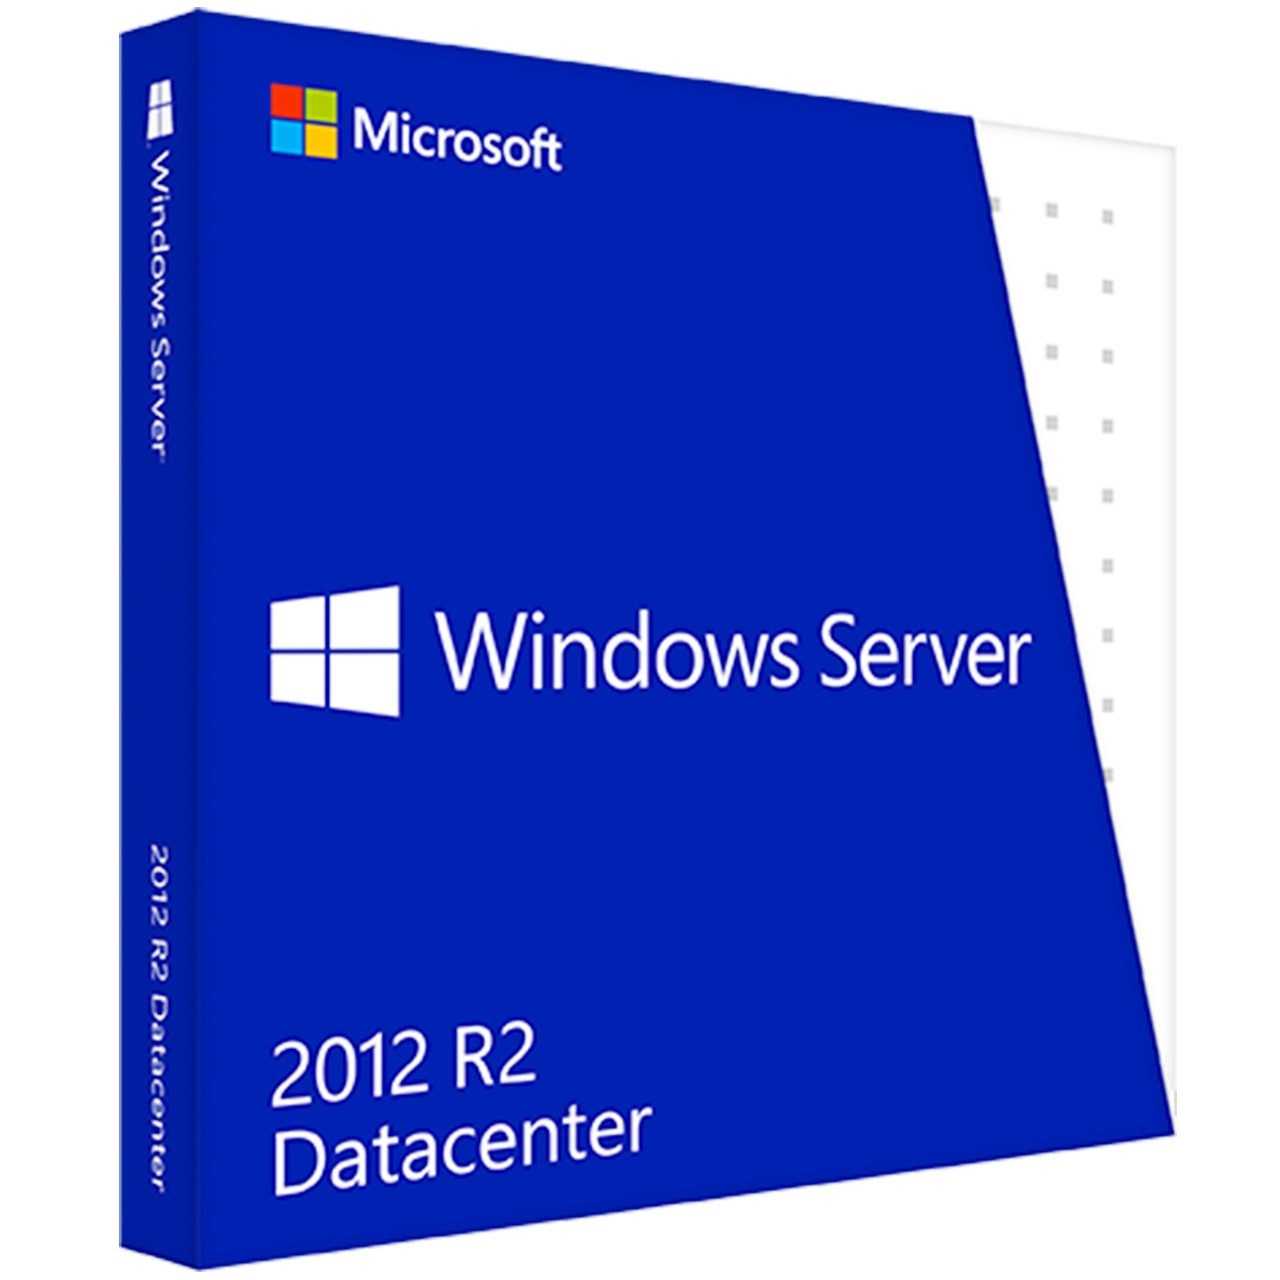 نرم افزار مایکروسافت ویندوز سرور R2 2012 نسخه دیتاسنتر